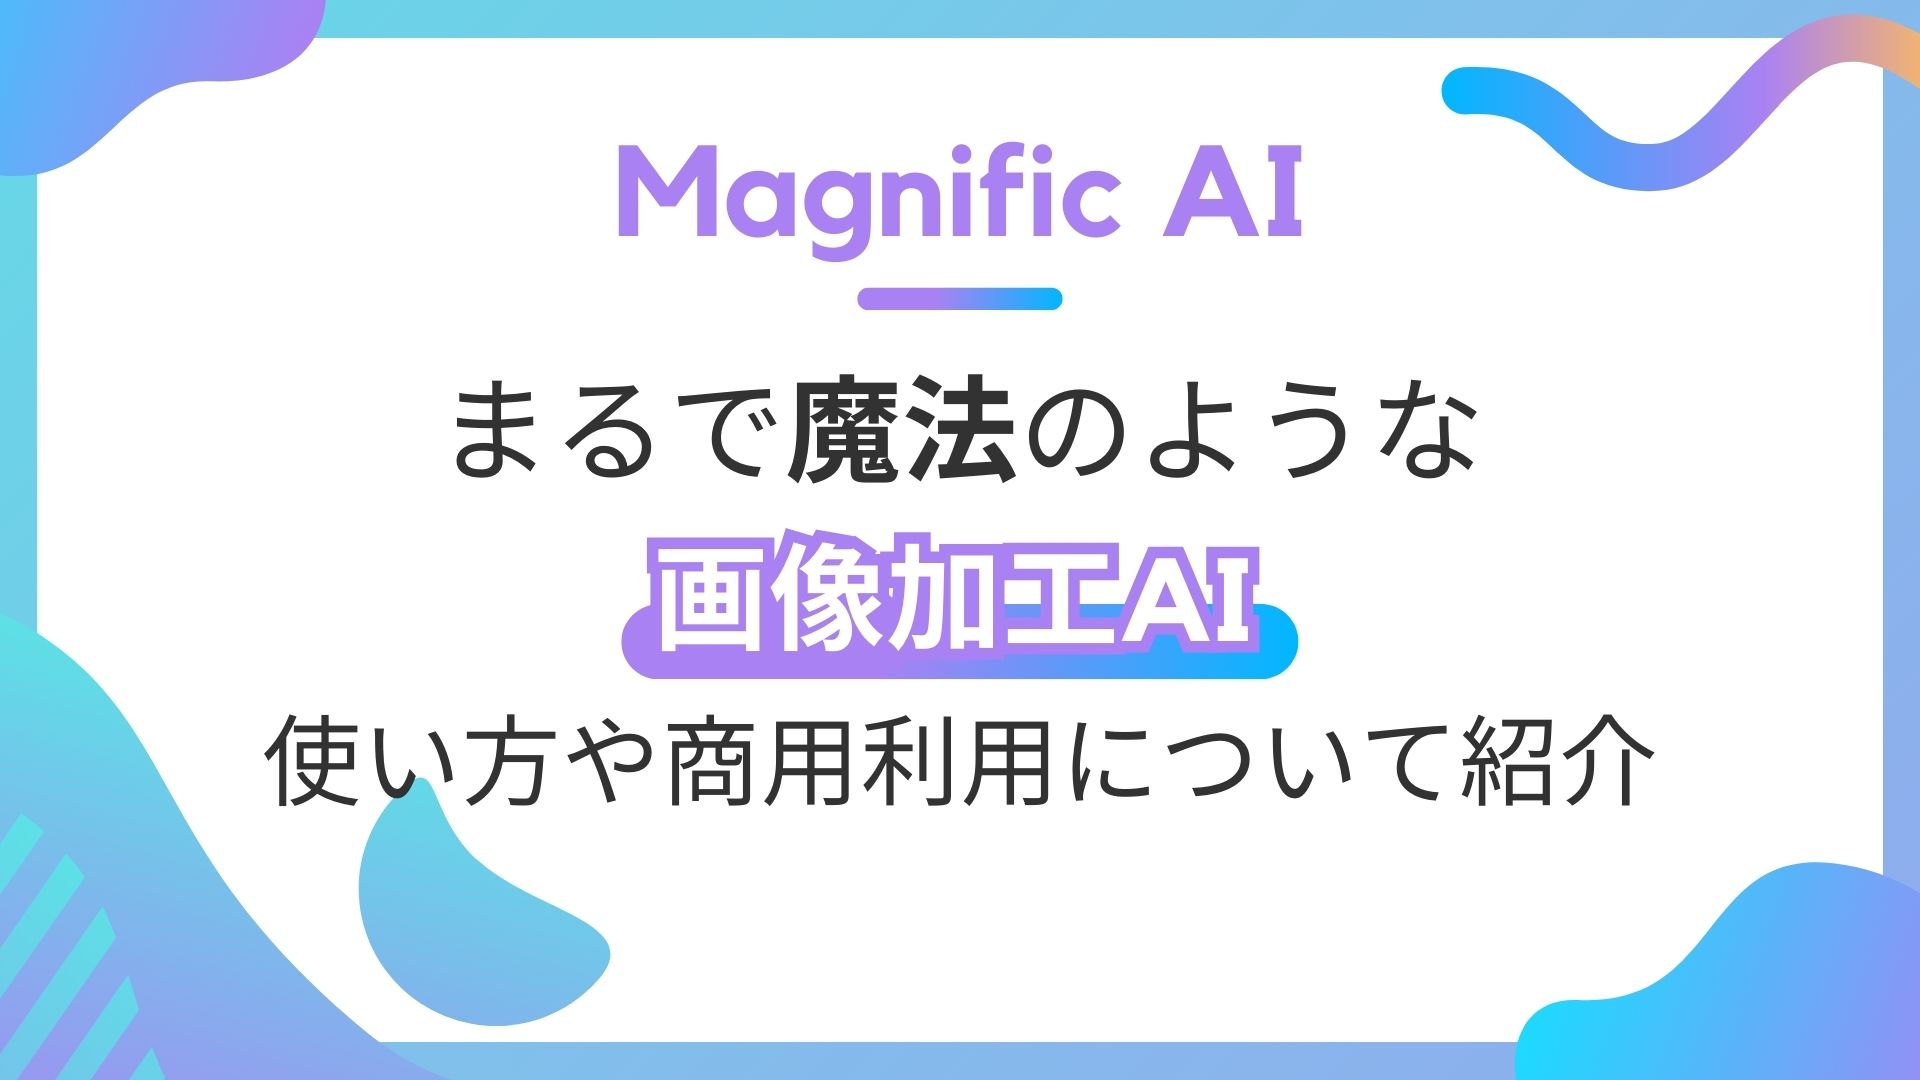 Magnific-AI 画像加工AI 使い方 商用利用 紹介